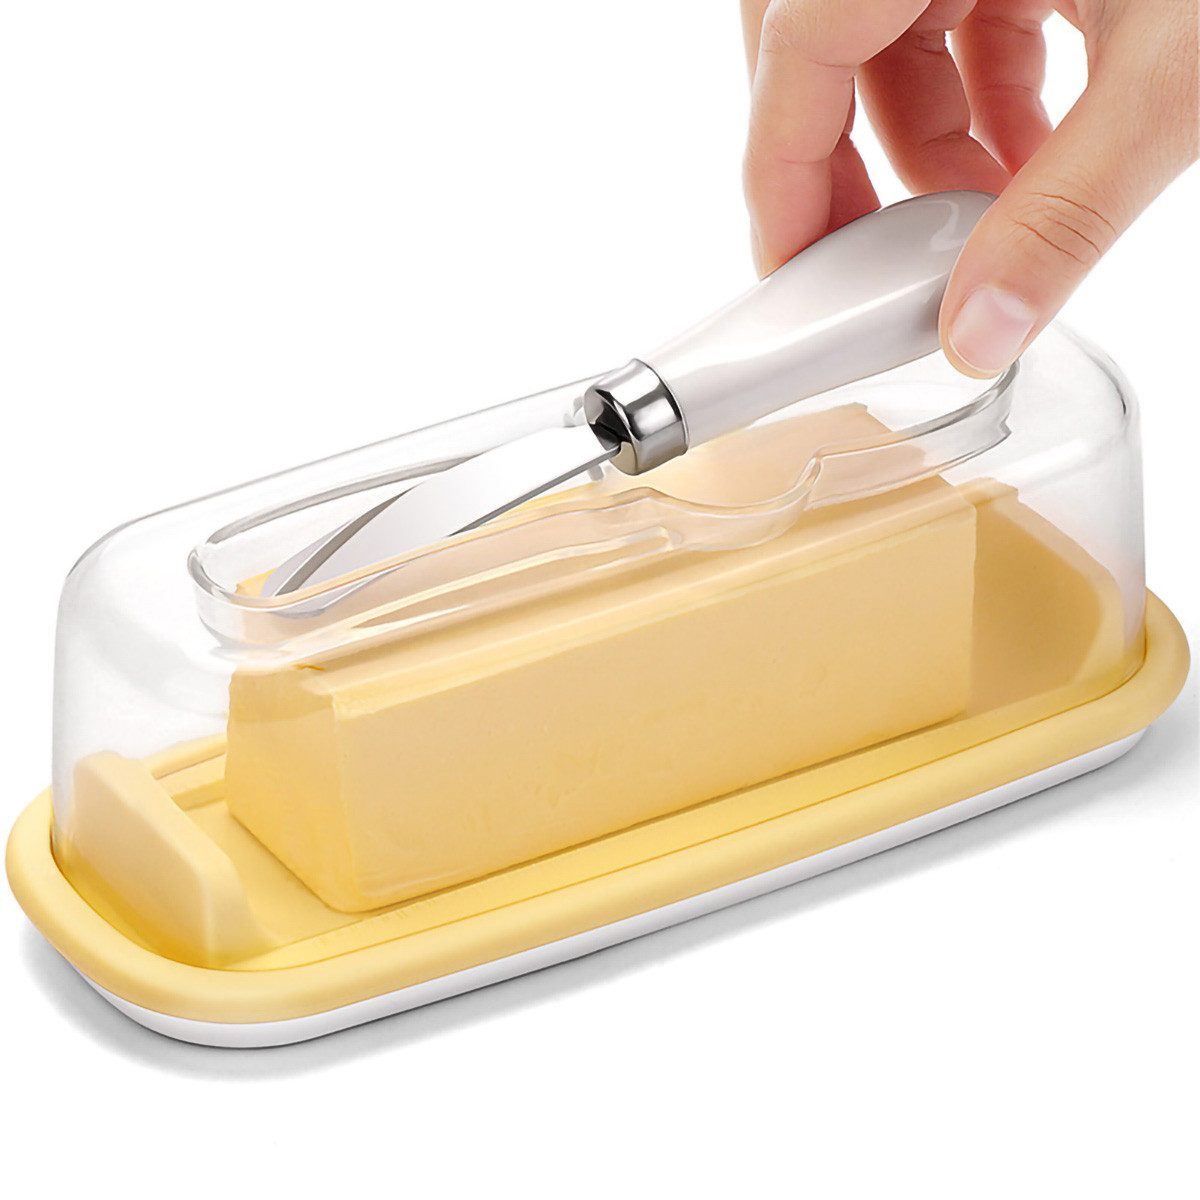 yozhiqu Butterdose Butterdose mit durchsichtigem Deckel, Crisper, fasst 250 g Butter, (1-tlg), mit Buttermesser geliefert–in die Kühlschranktür (18,3 x 7 x 7 cm)